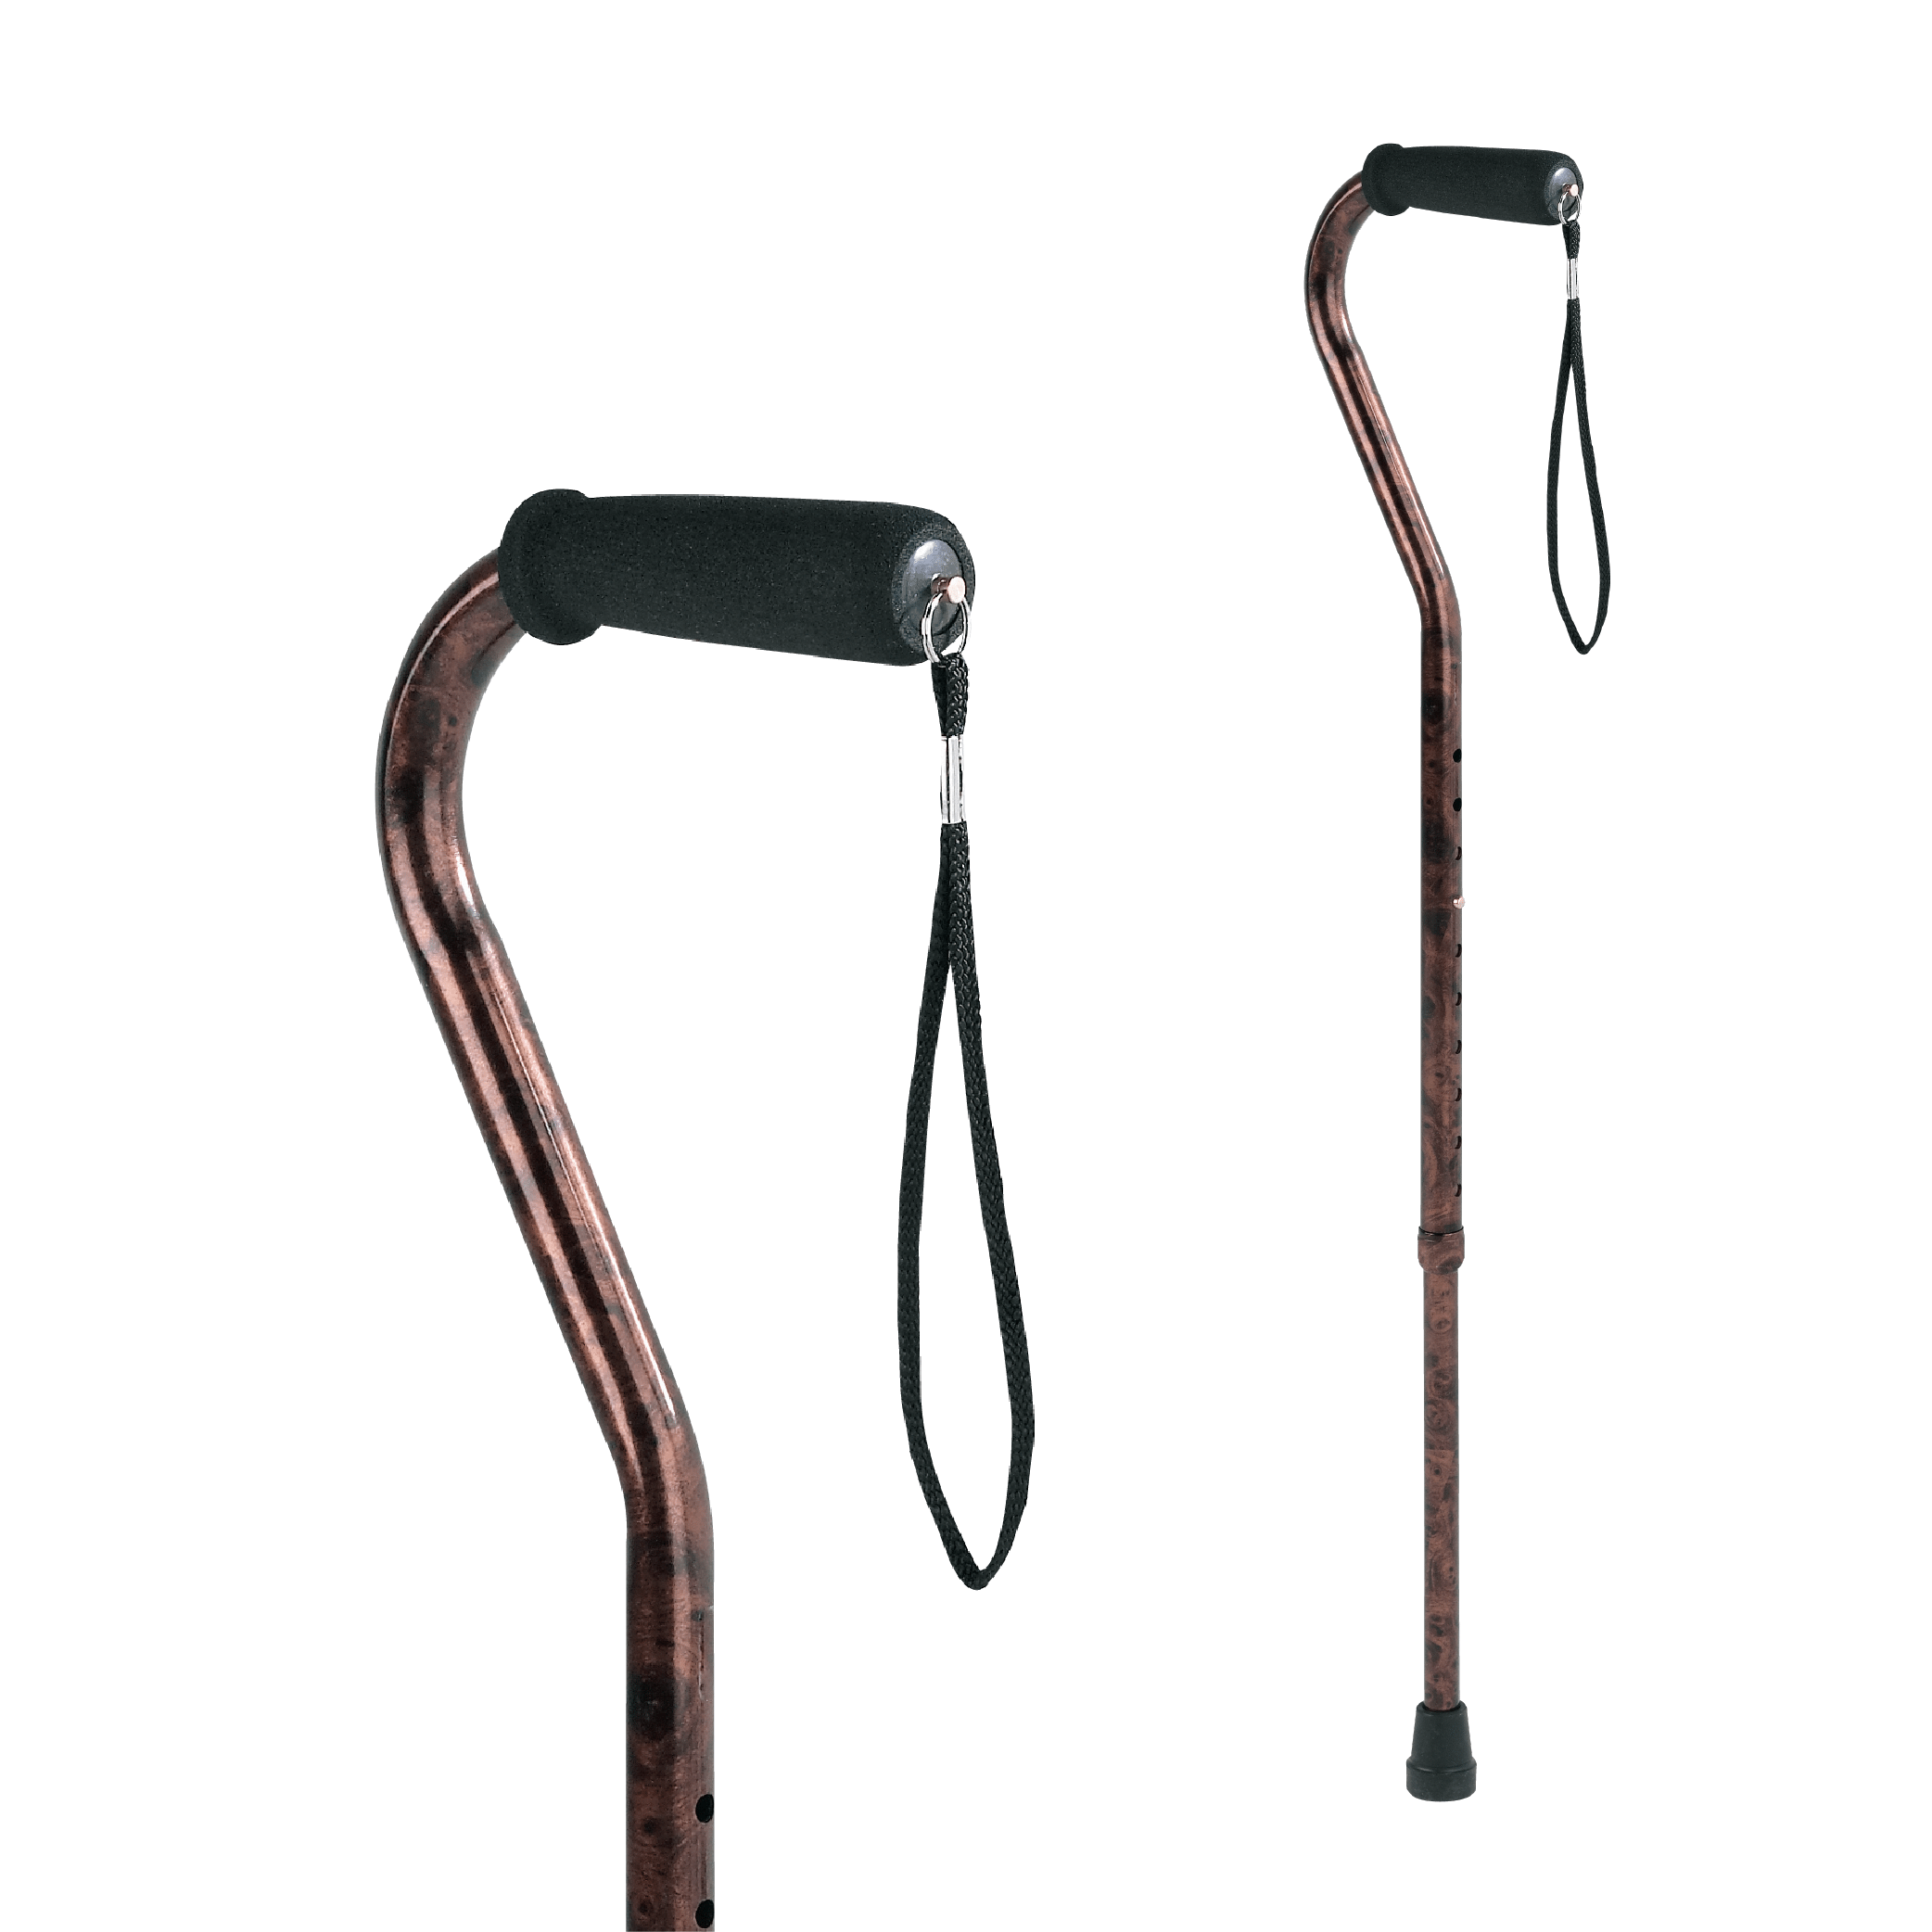 https://carex.com/cdn/shop/products/carexshop-walking-cane-bronze-carex-designer-offset-walking-cane-28917436579945.png?v=1688676102